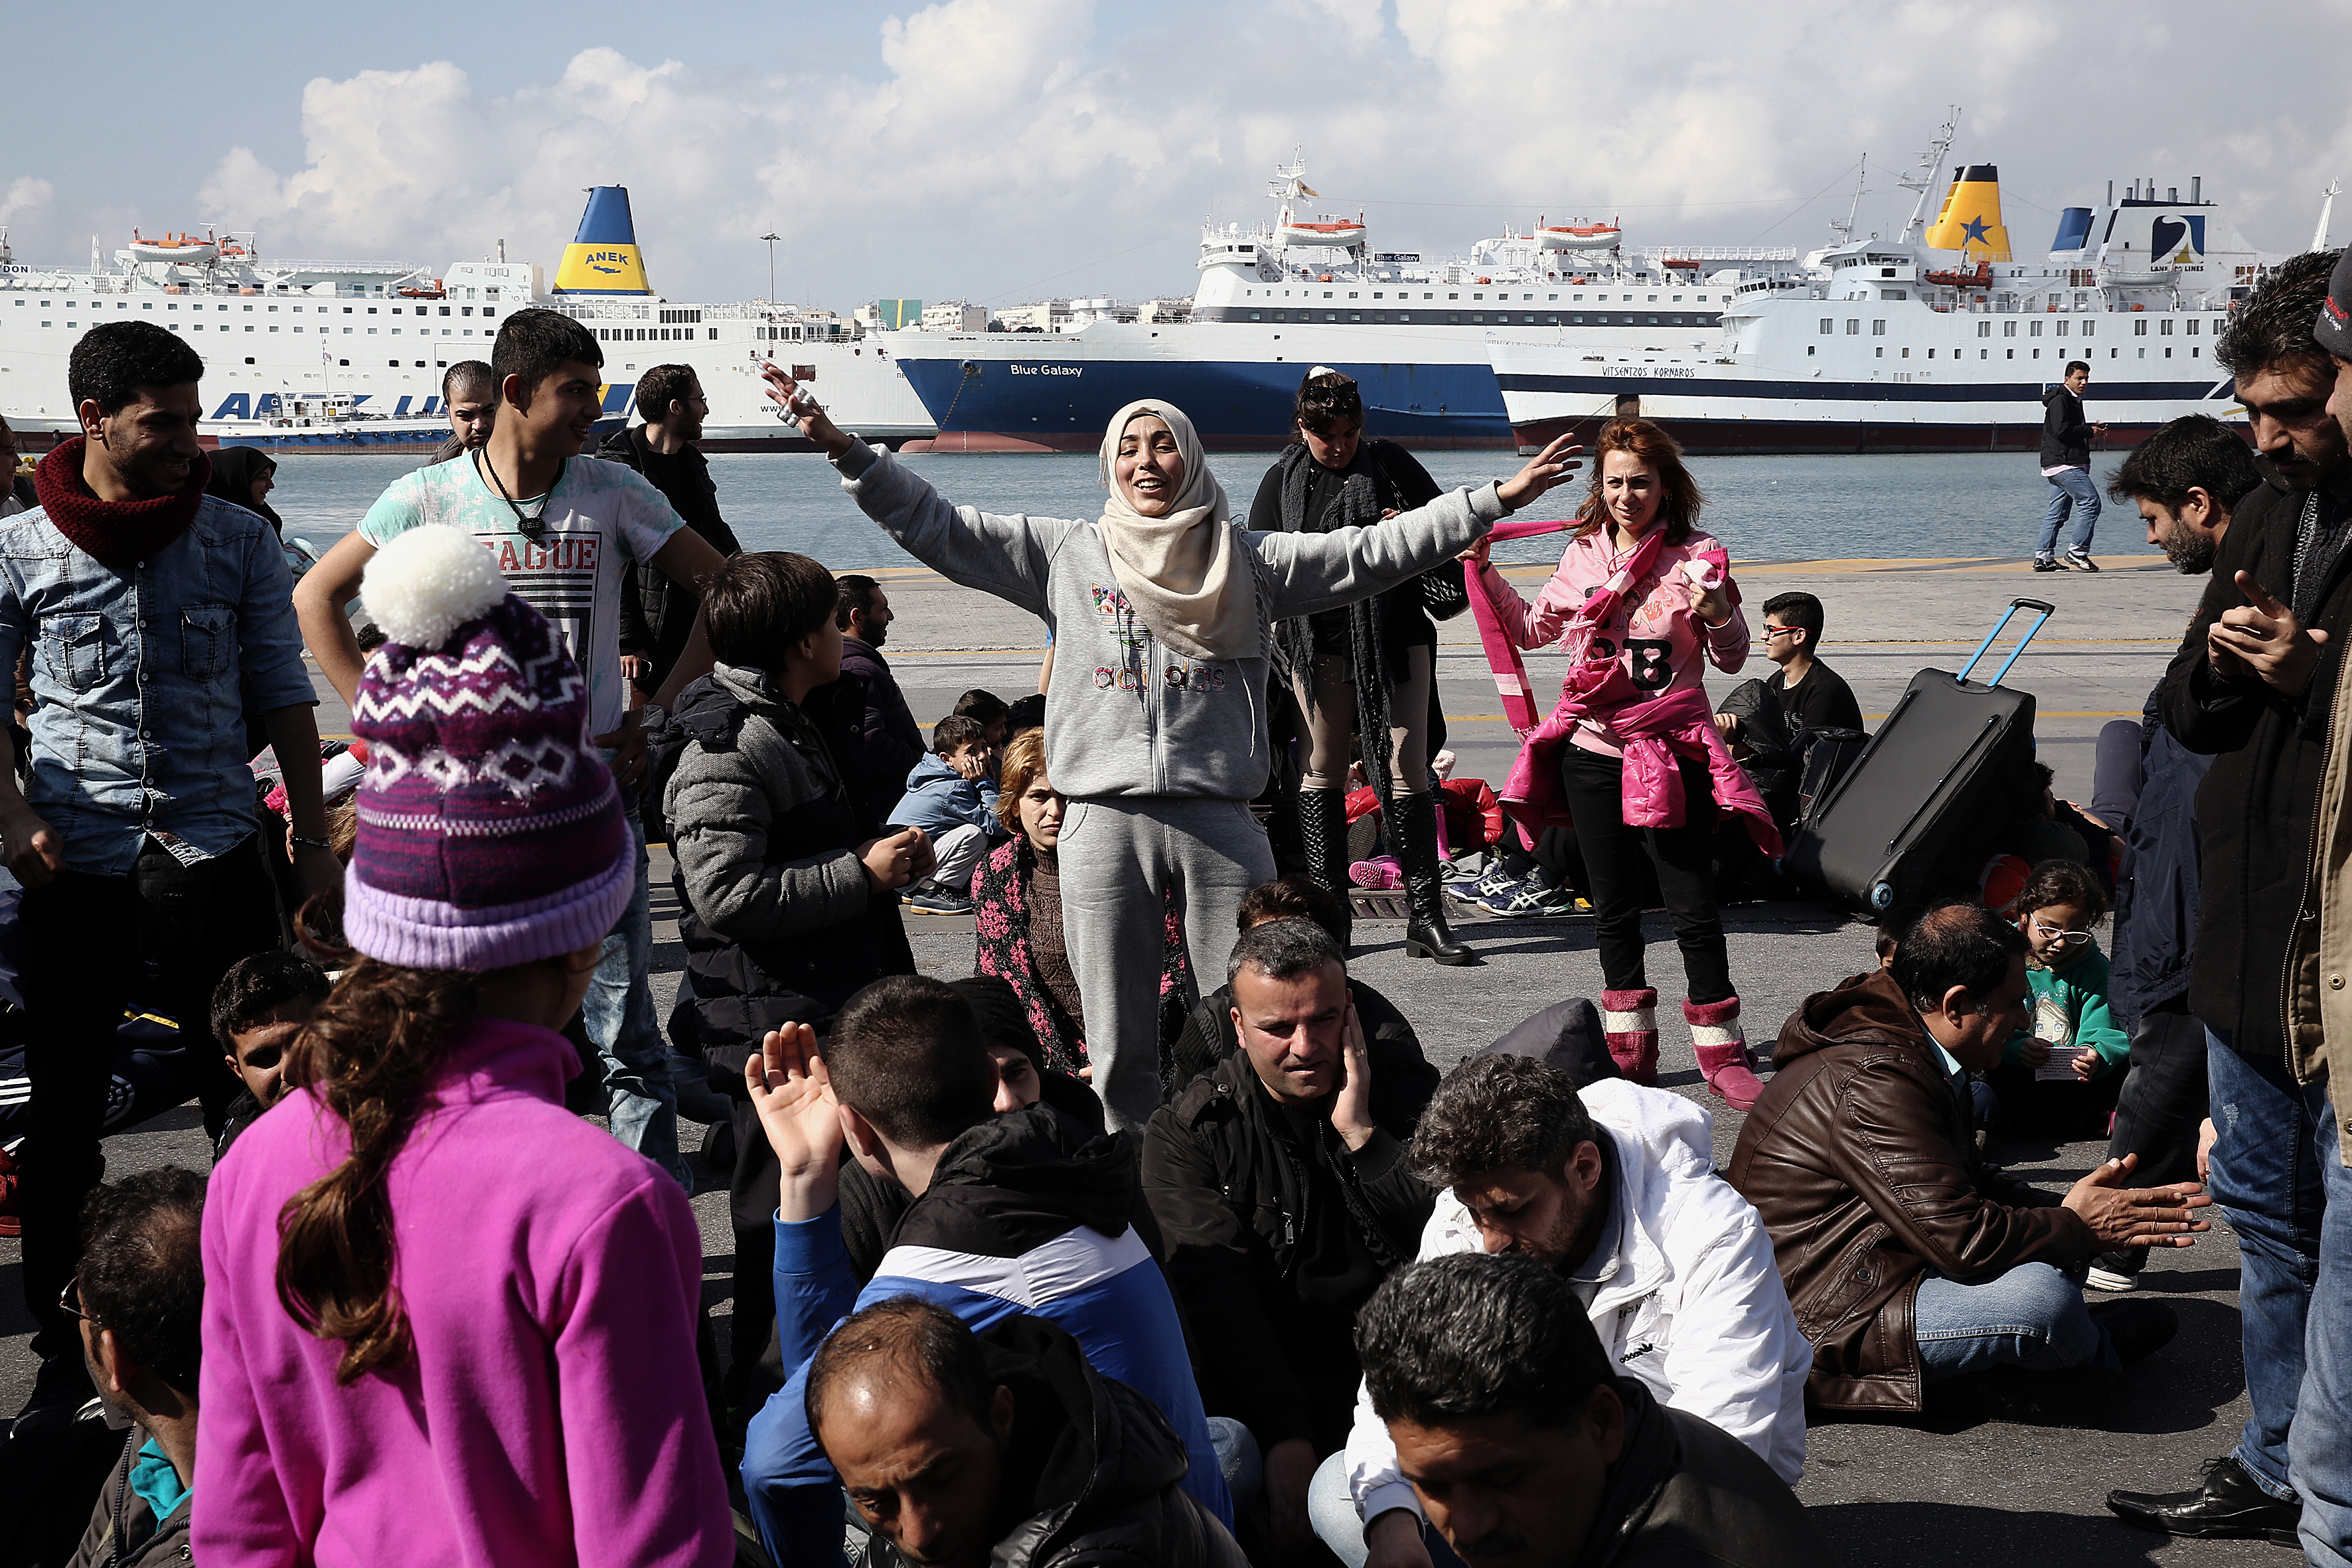 Σύσκεψη για τη διαχείριση των προσφυγικών ροών στον Πειραιά